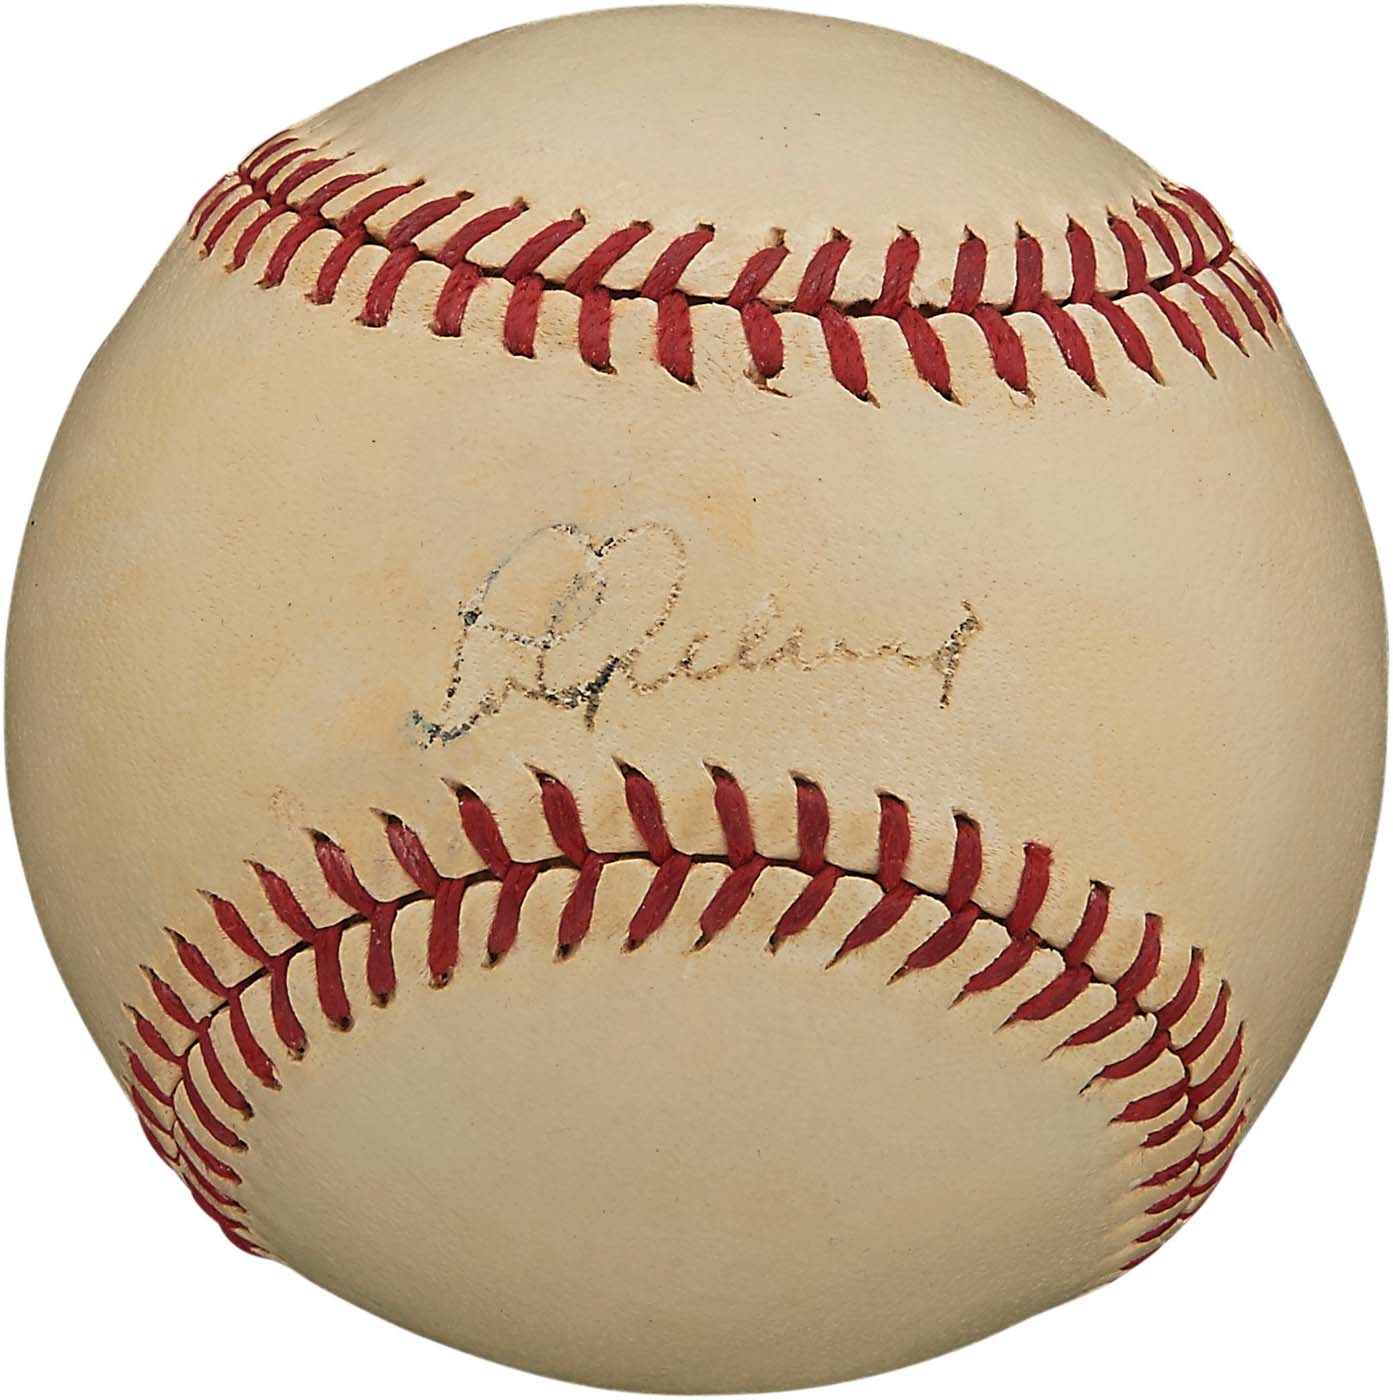 1934-39 Lou Gehrig Signed OAL Harridge Baseball (PSA)